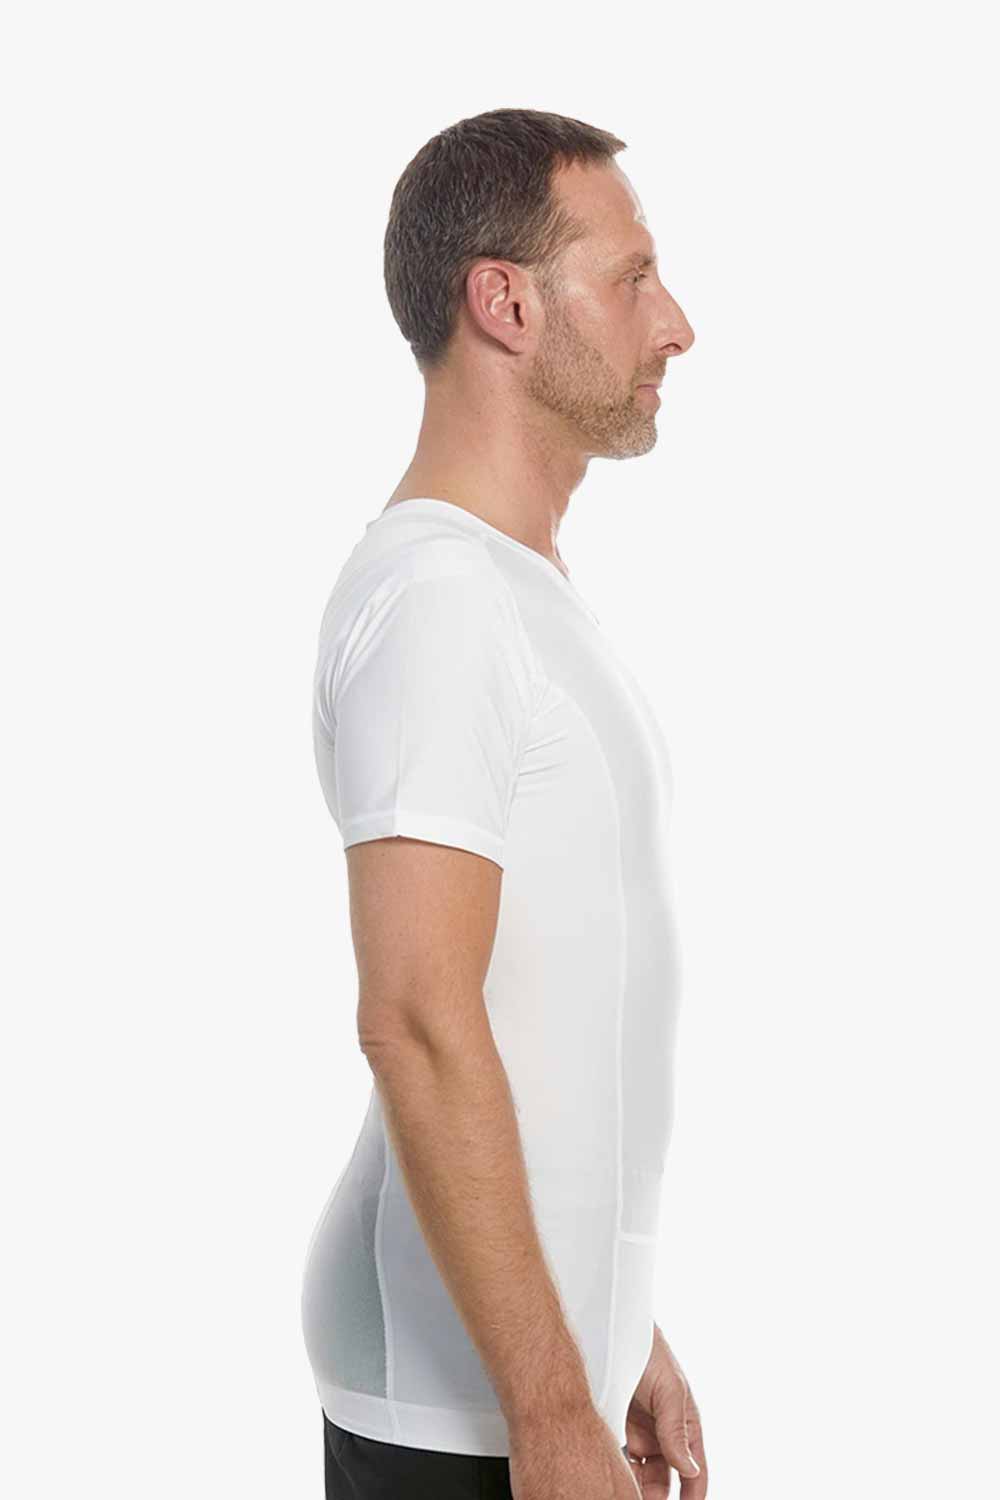 weiss posture shirt fördert haltungskorrektur